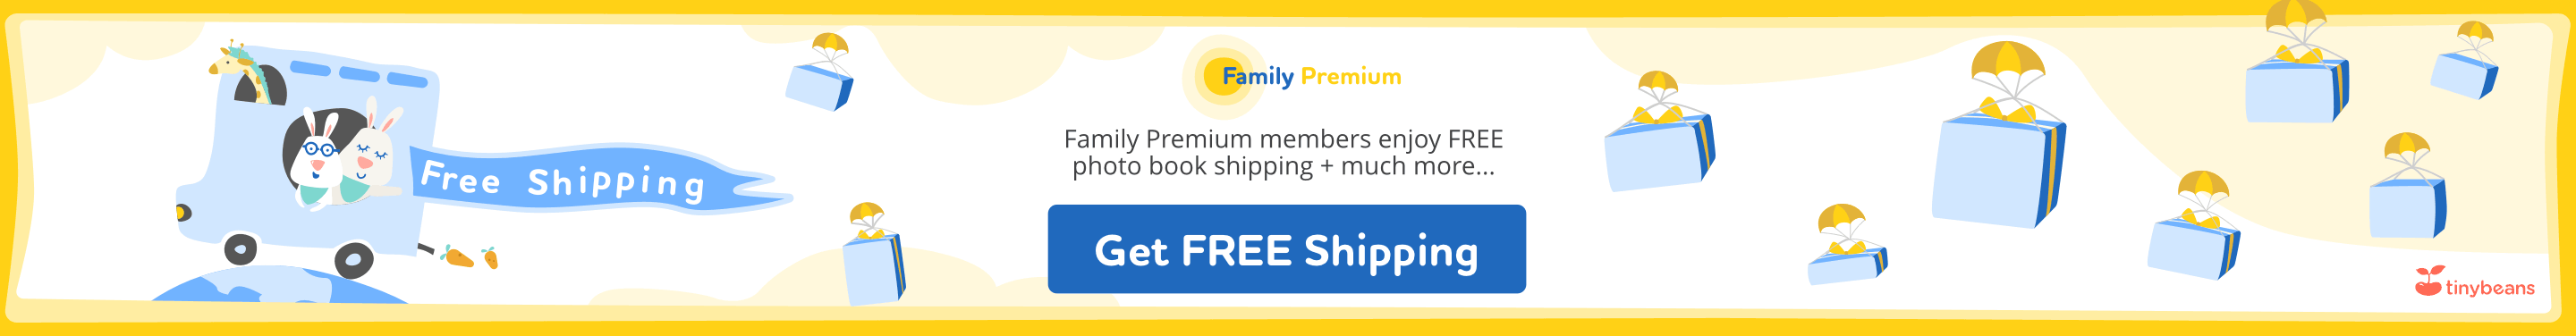 Get family premium